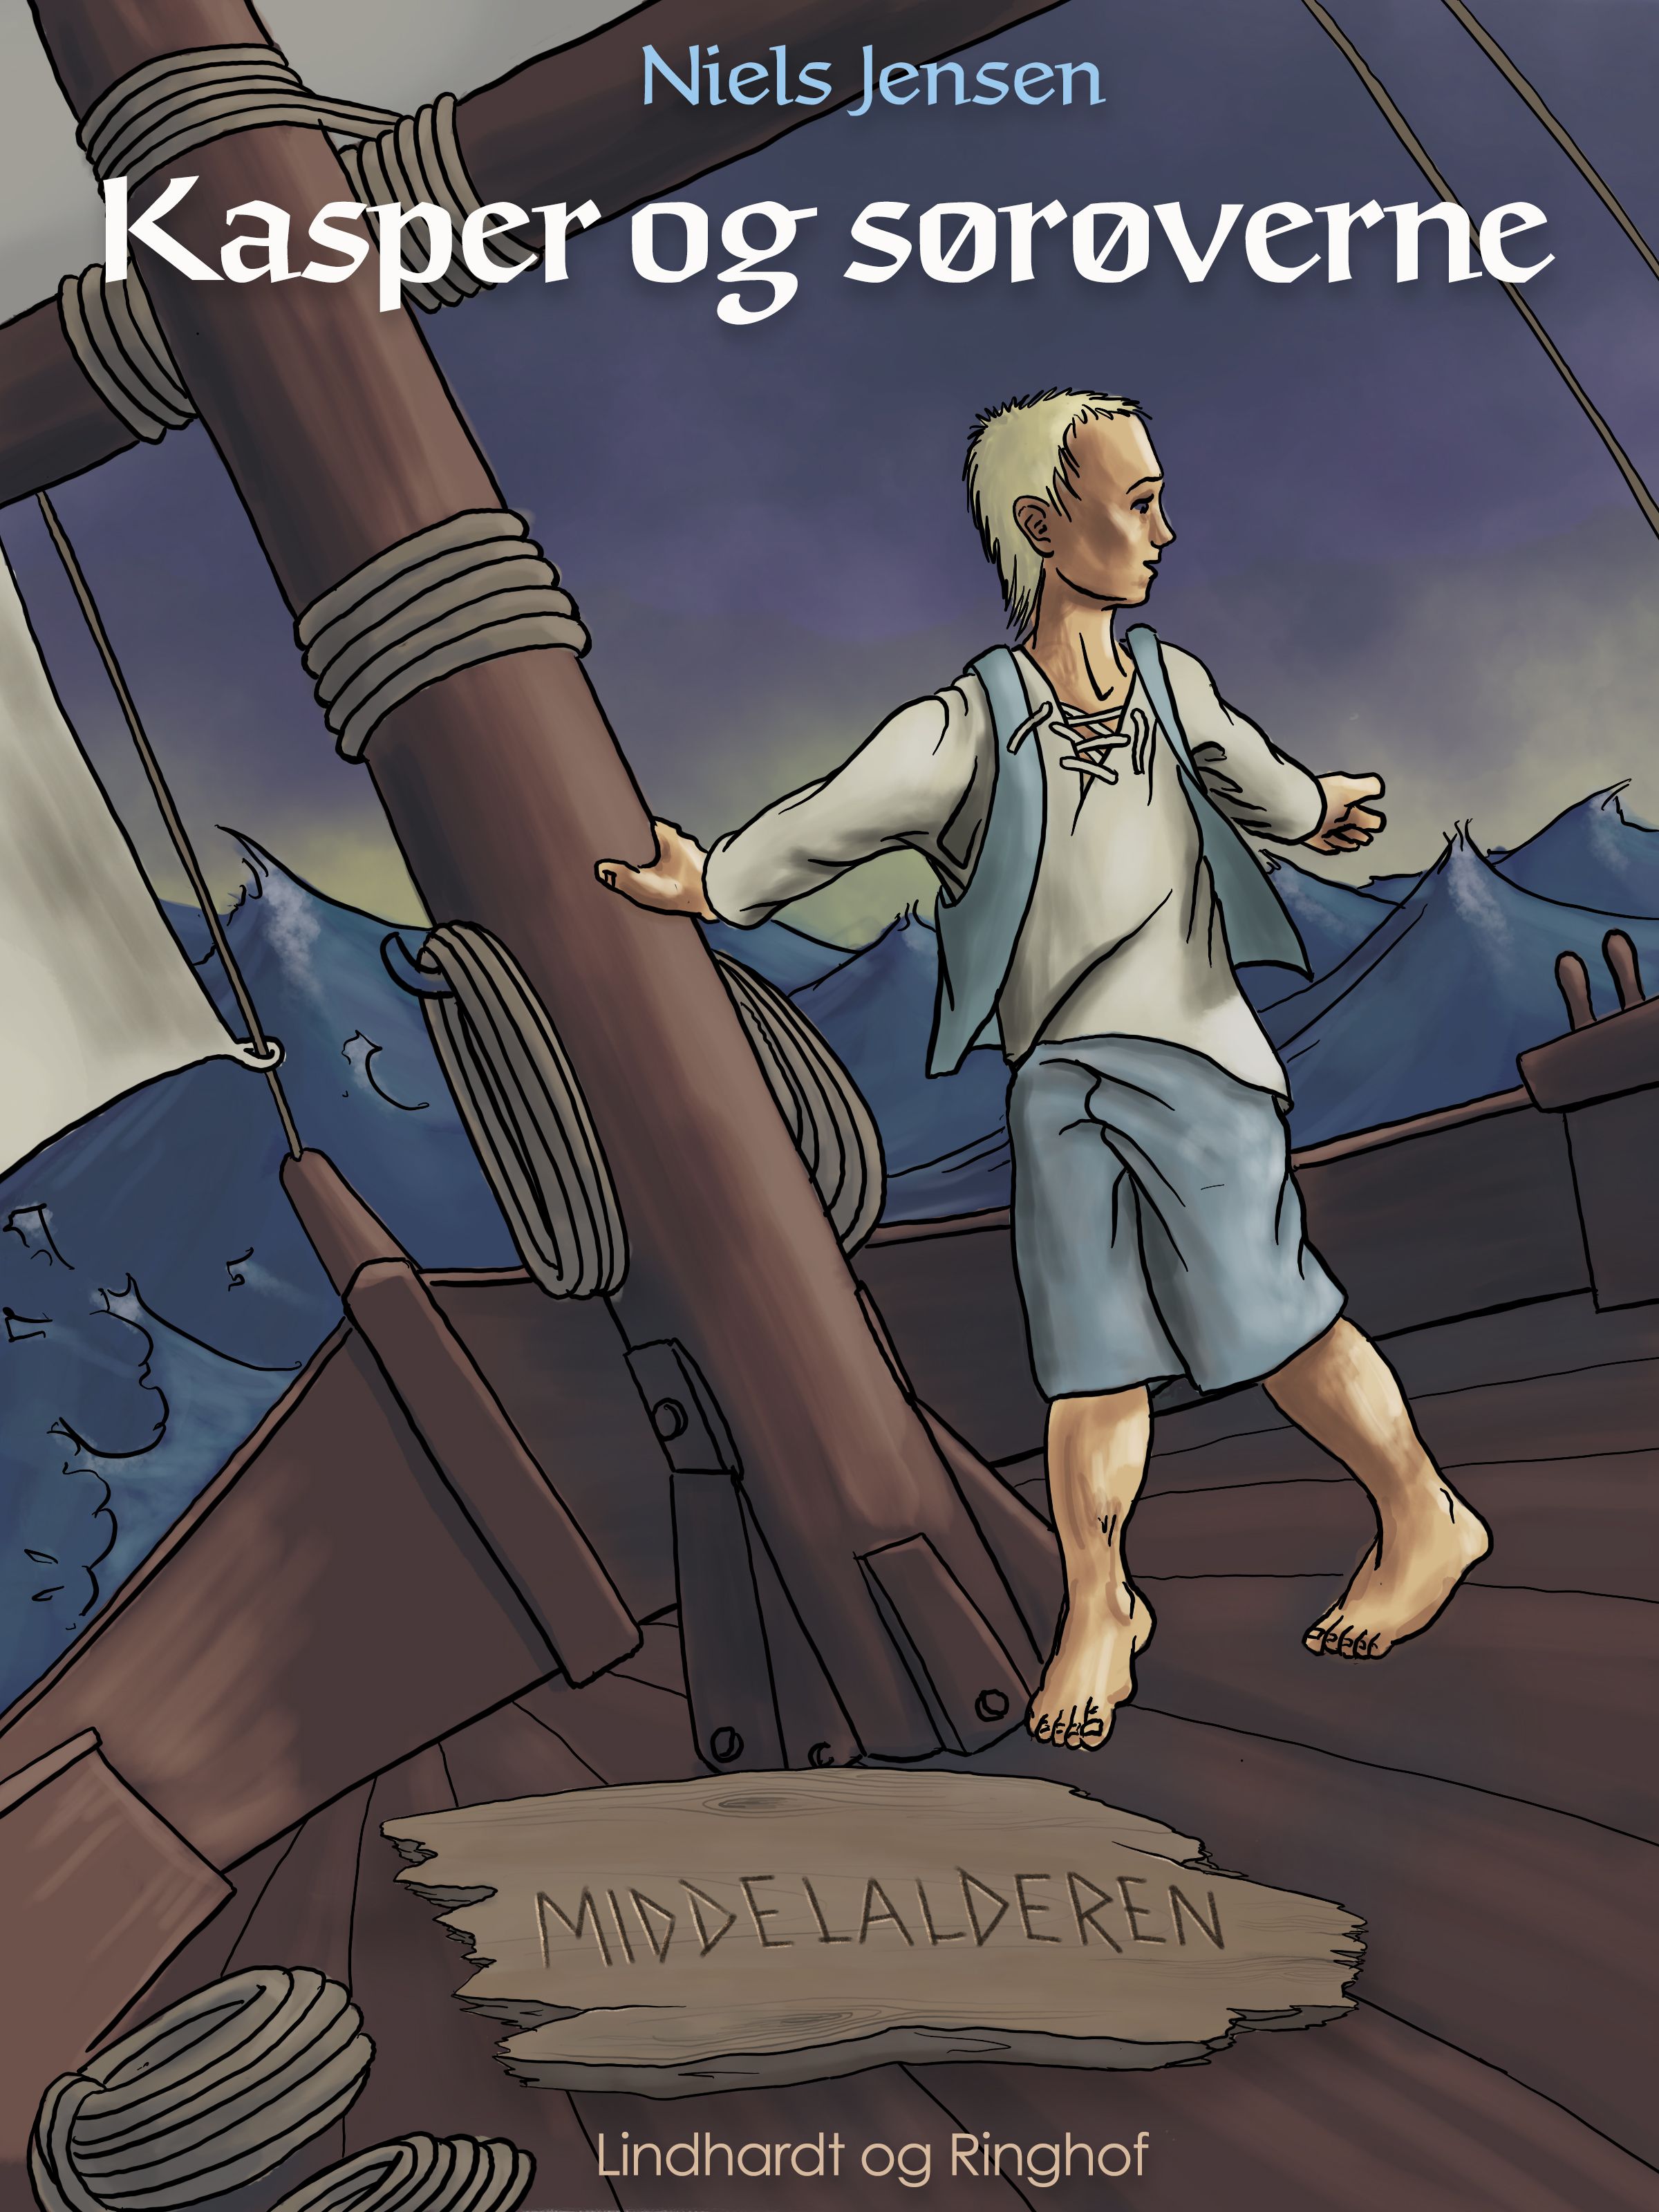 Middelalderen: Kasper og sørøverne, ljudbok av Niels Jensen